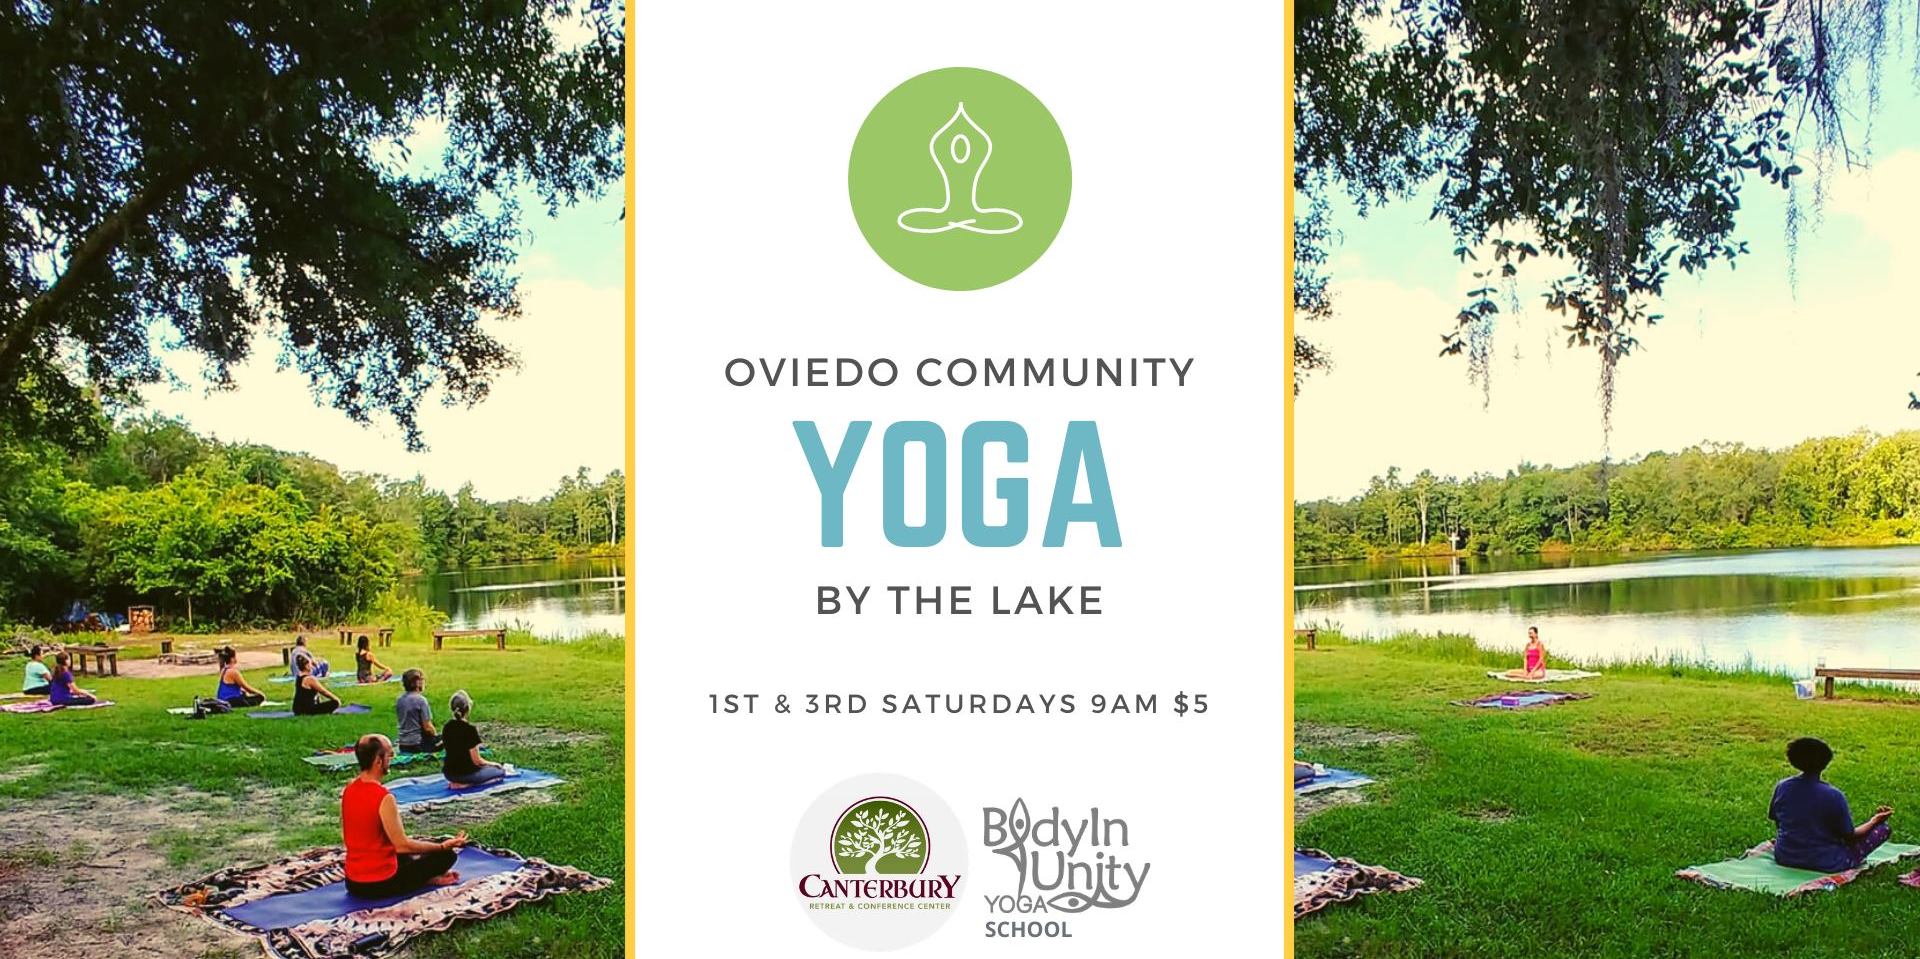 Yoga by the Lake -- Oviedo Community promotional image